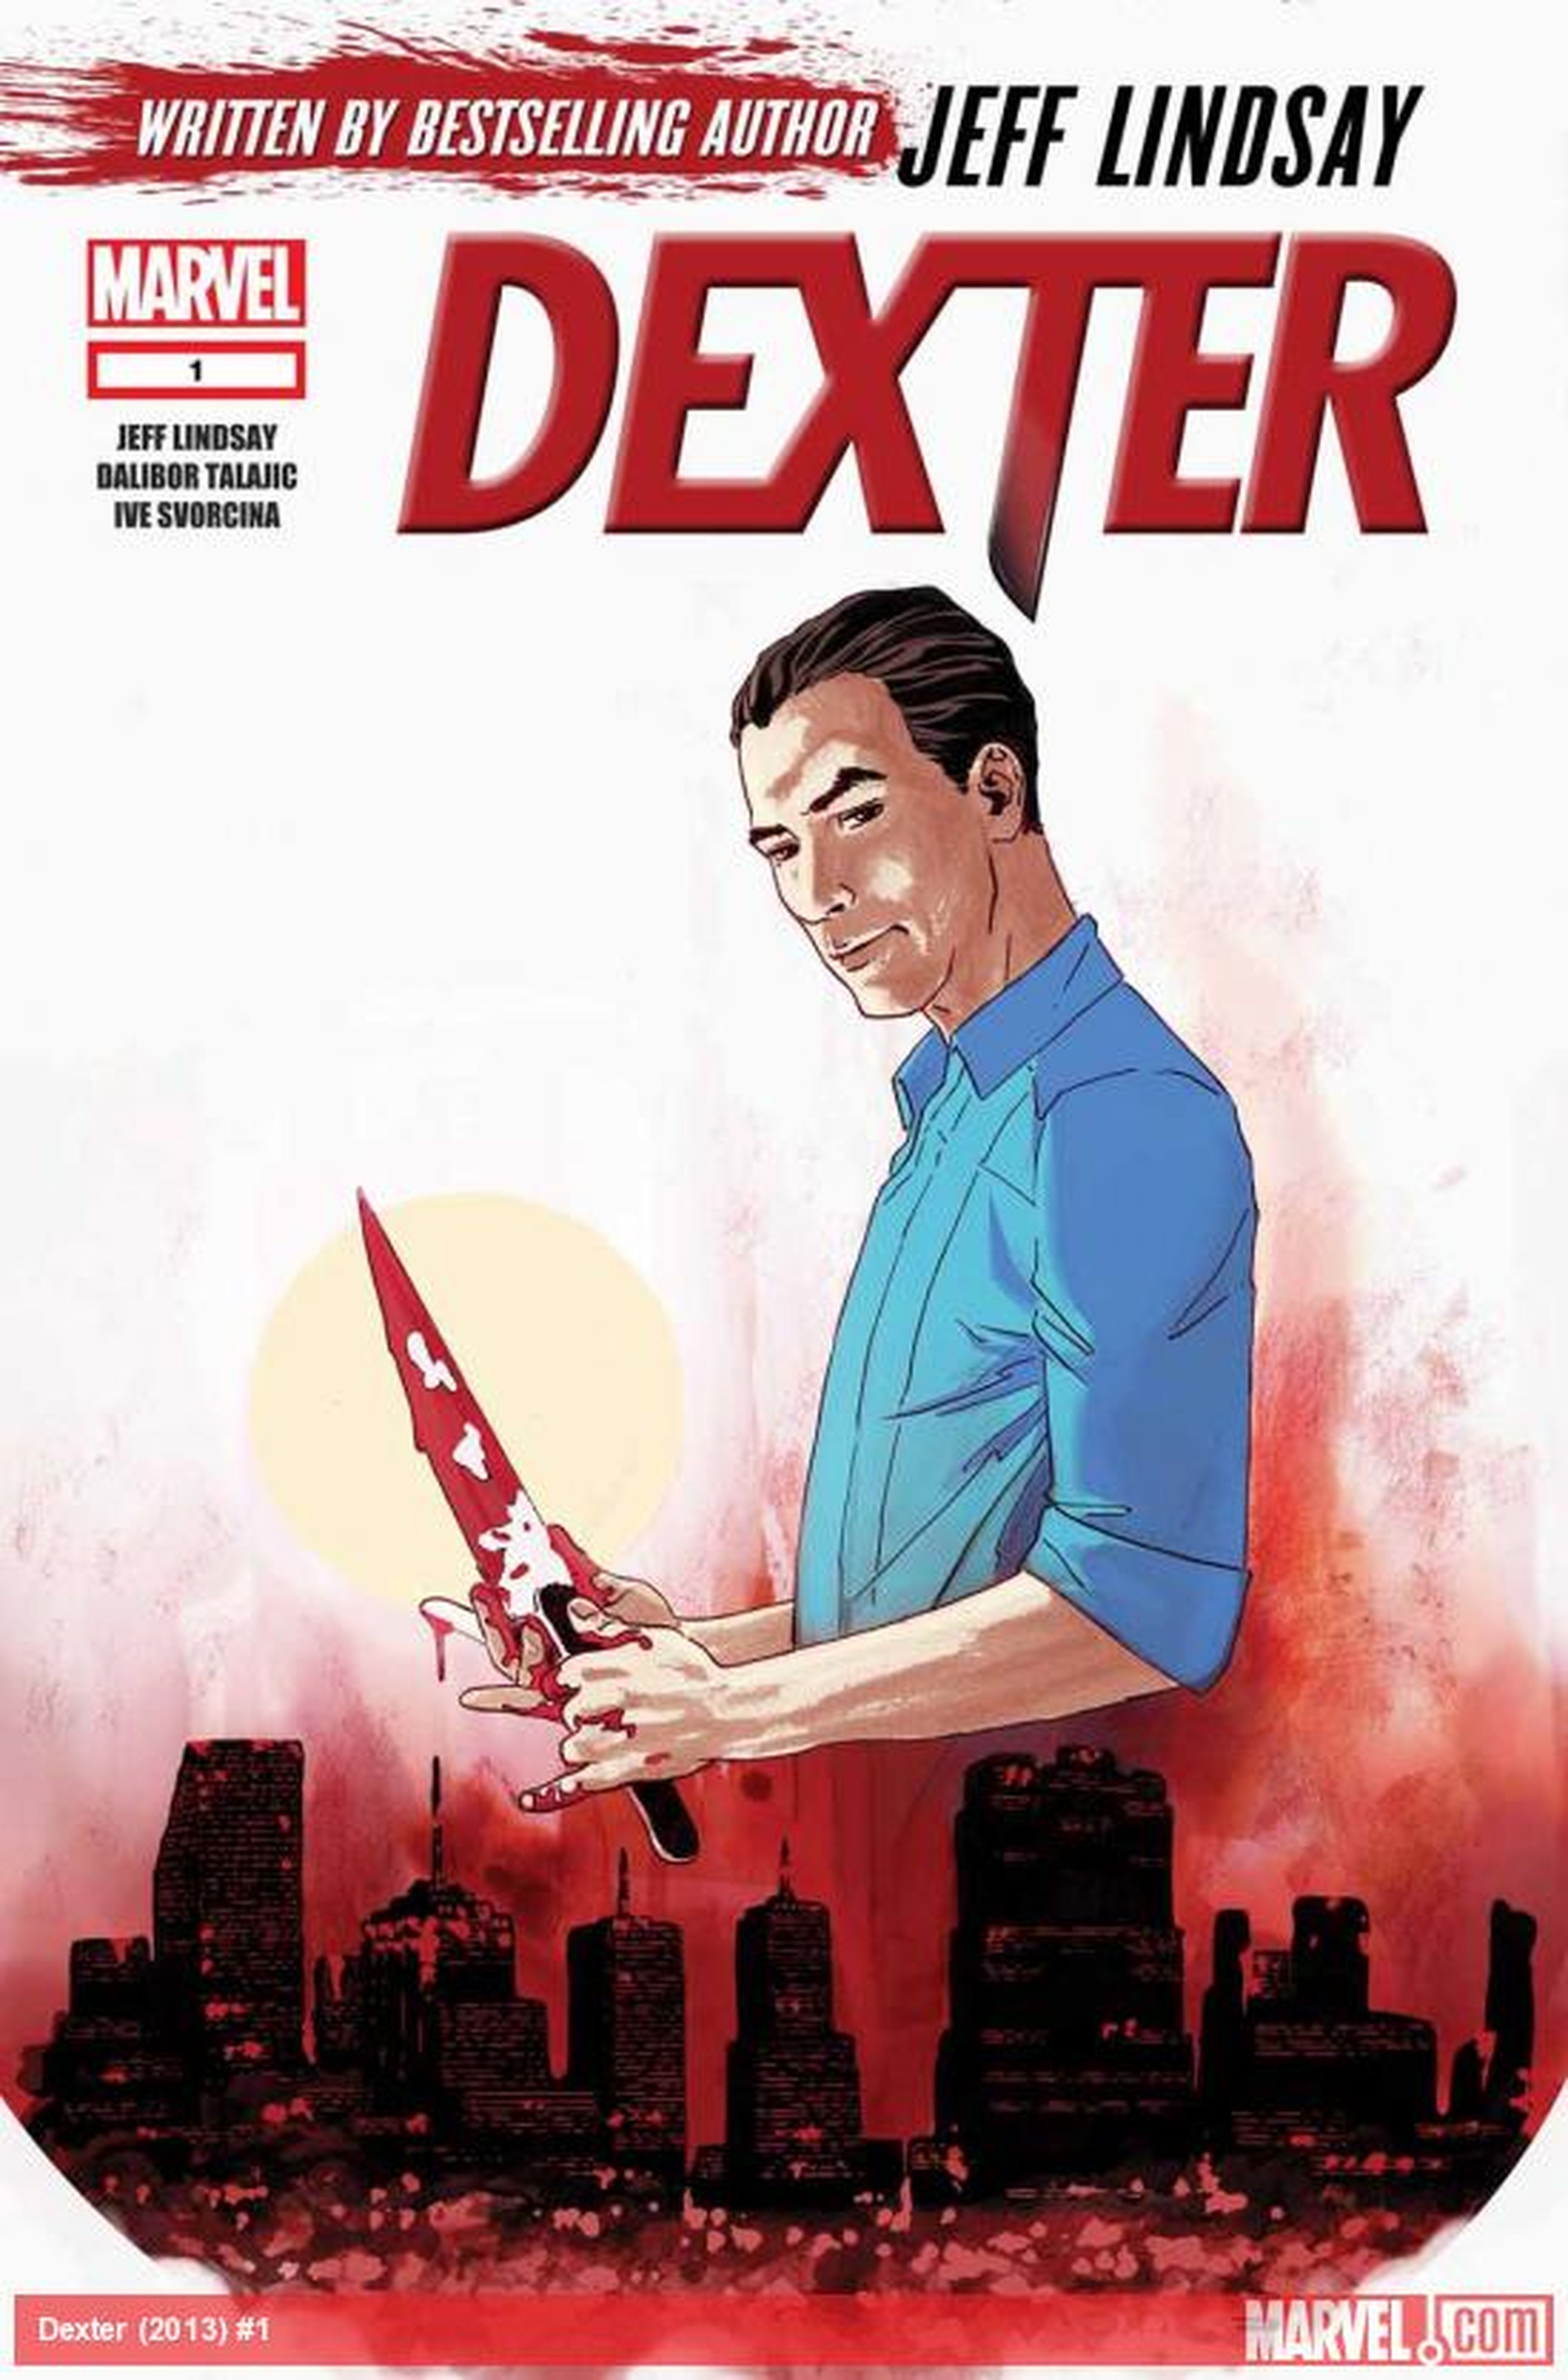 Llega el cómic de Dexter